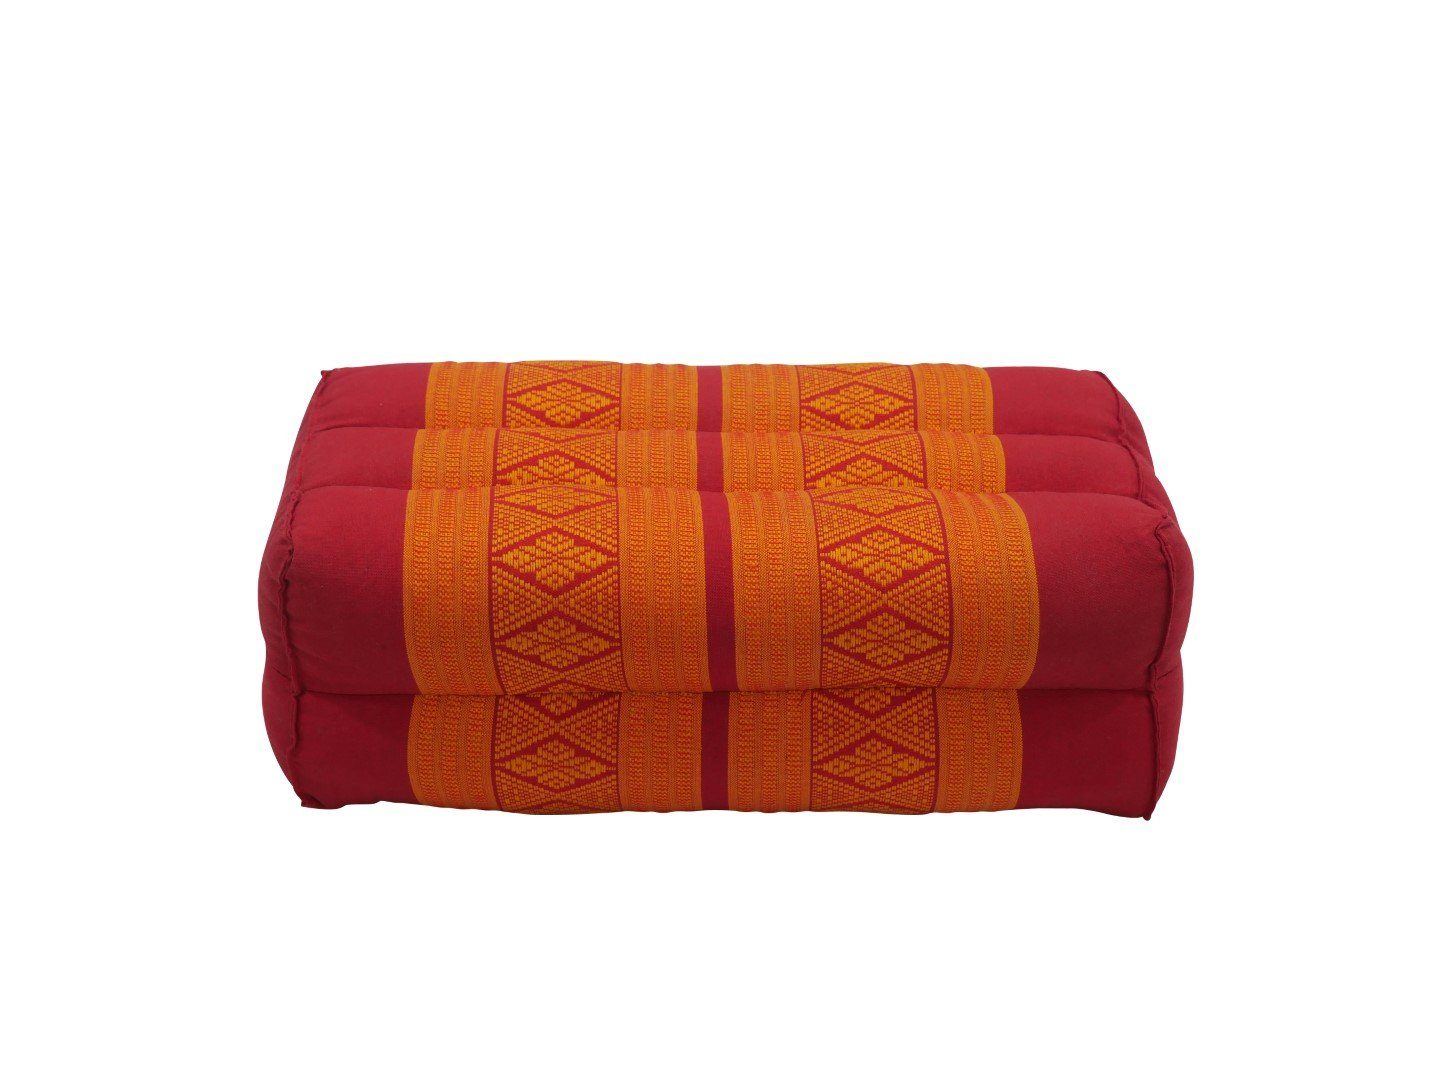 Yoga-Meditationskissen, my rot-orange unterstützend, Hamam orientalischem mit Muster Yogakissen Thaimassage Kissen,